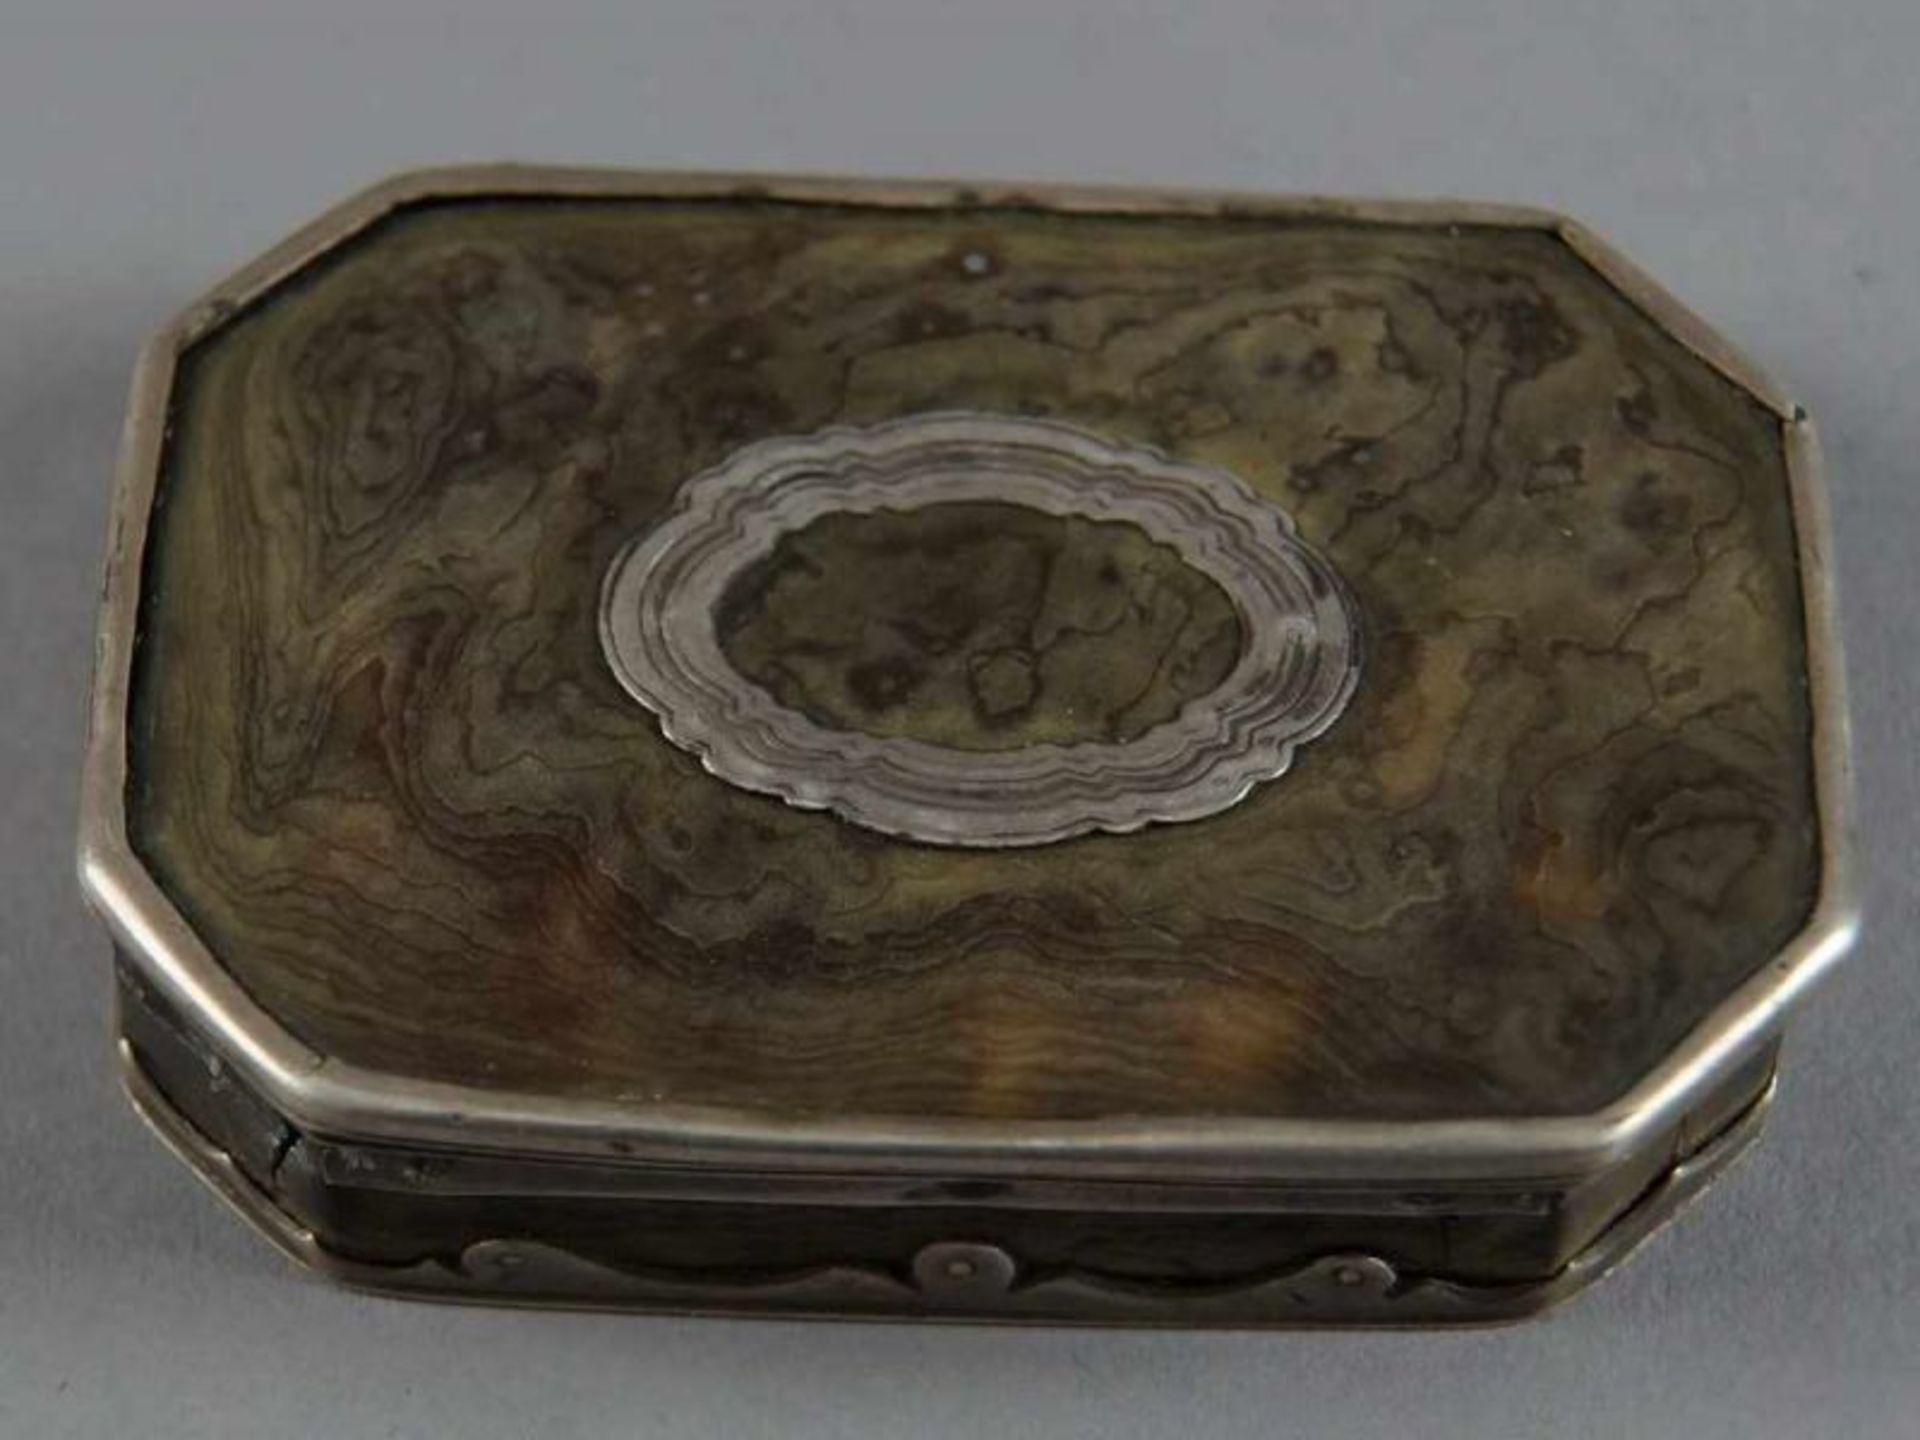 Barock Deckeldose, Schildpatt mit Silbermontierung, 18. JH, besch., 2x8,5x6 cm 20.17 % buyer's - Bild 4 aus 11